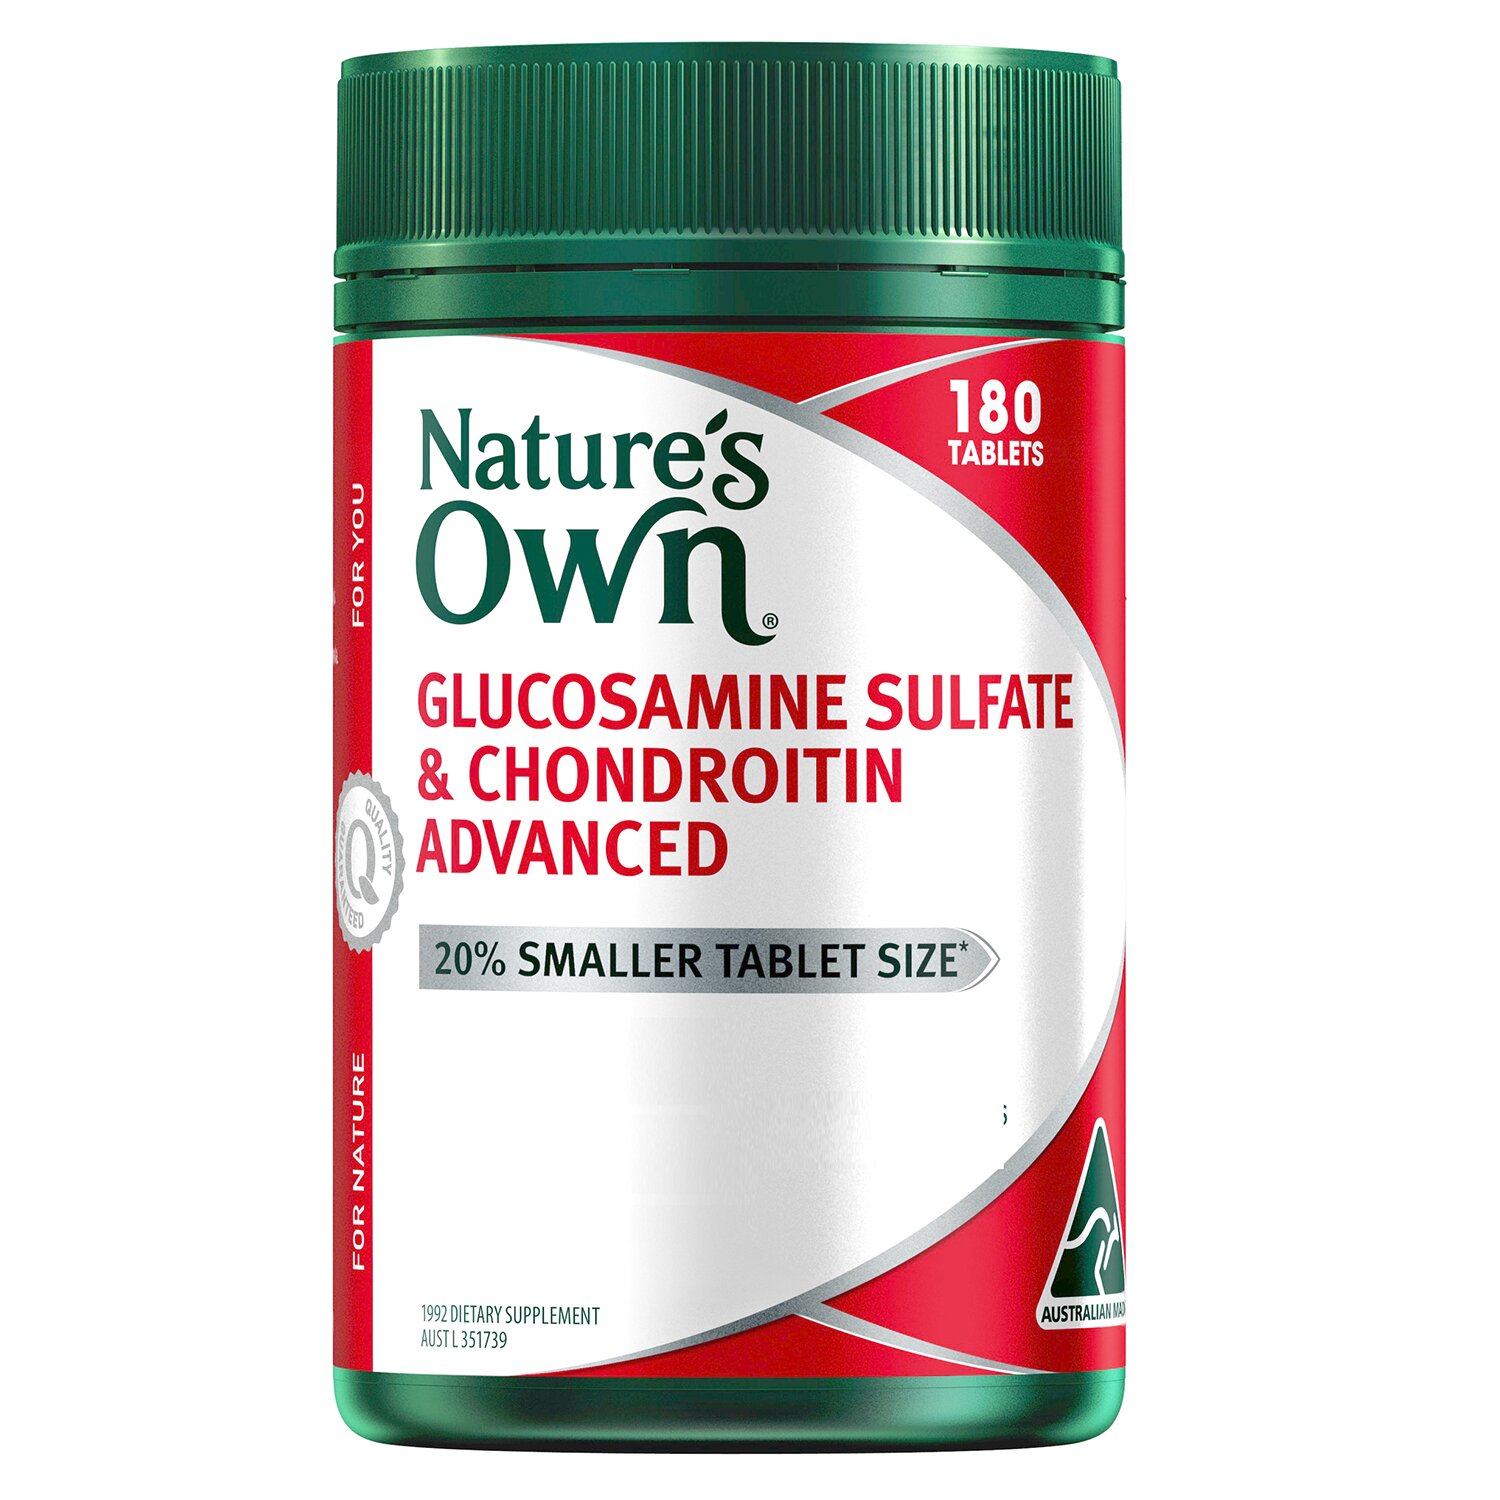 네이쳐스온 Nature's Own [Authorized Sales Agent] Nature's Own Glucosamine & Chond ADV - 180 tablets 180pcs/box